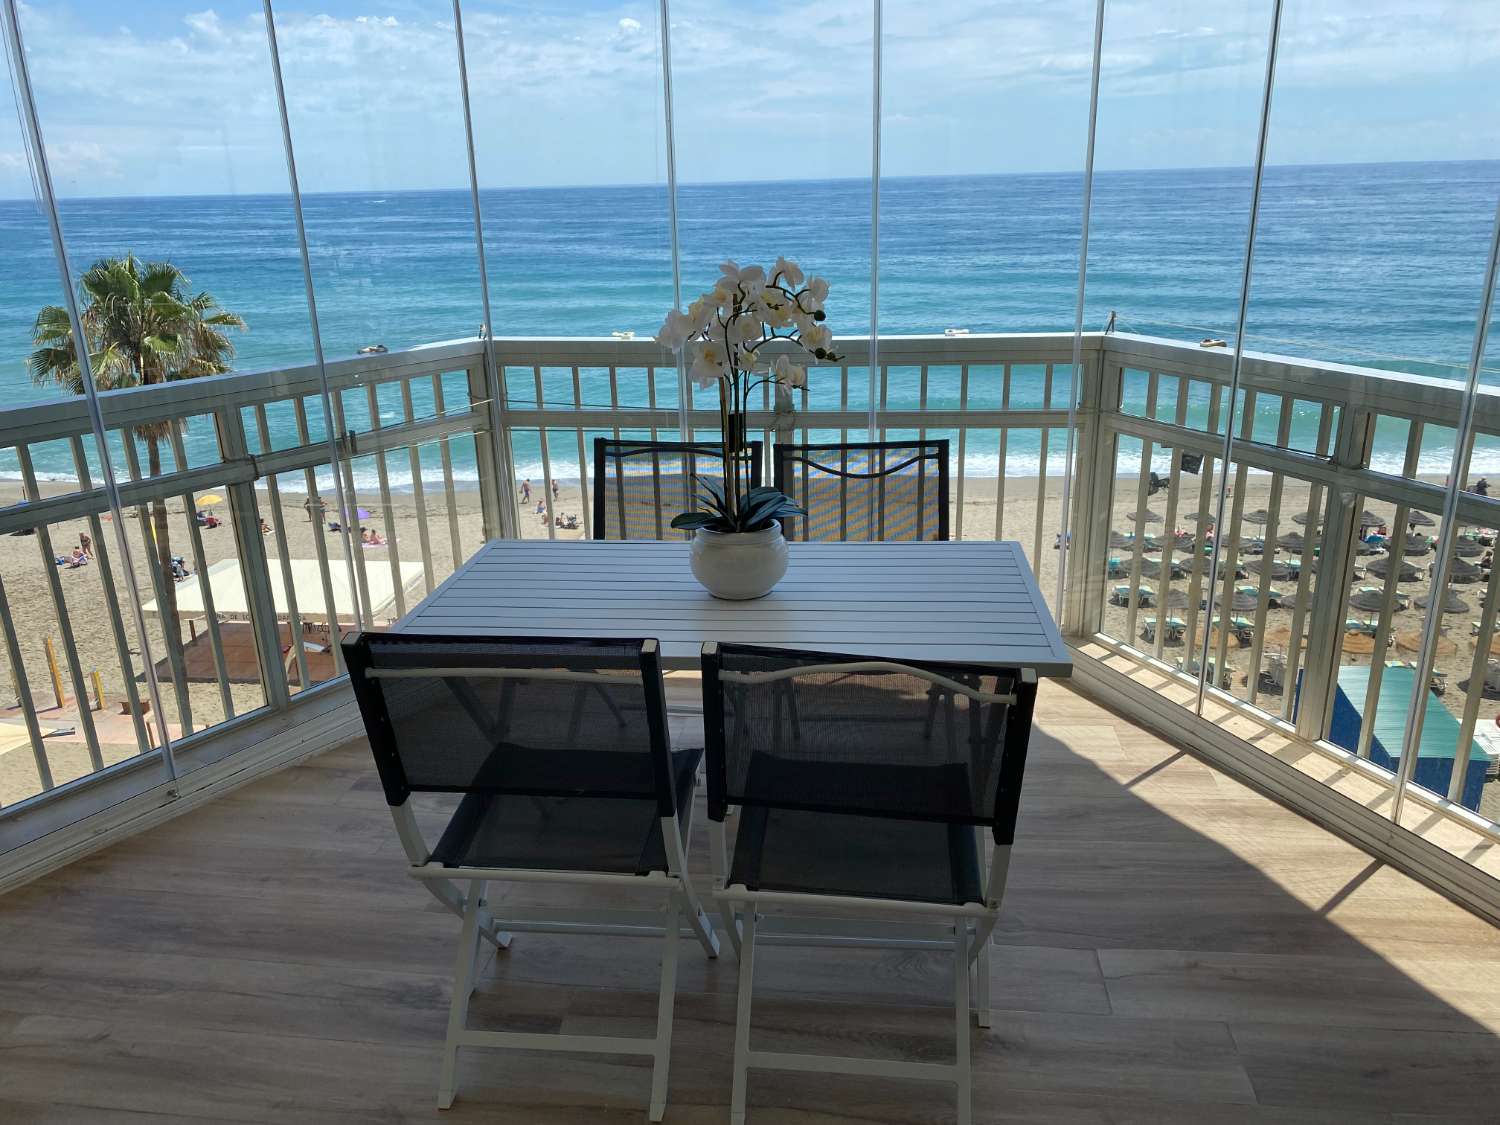 Incroyable appartement rénové avec vue panoramique sur la mer : La maison idéale pour les amoureux de la plage !&quot;